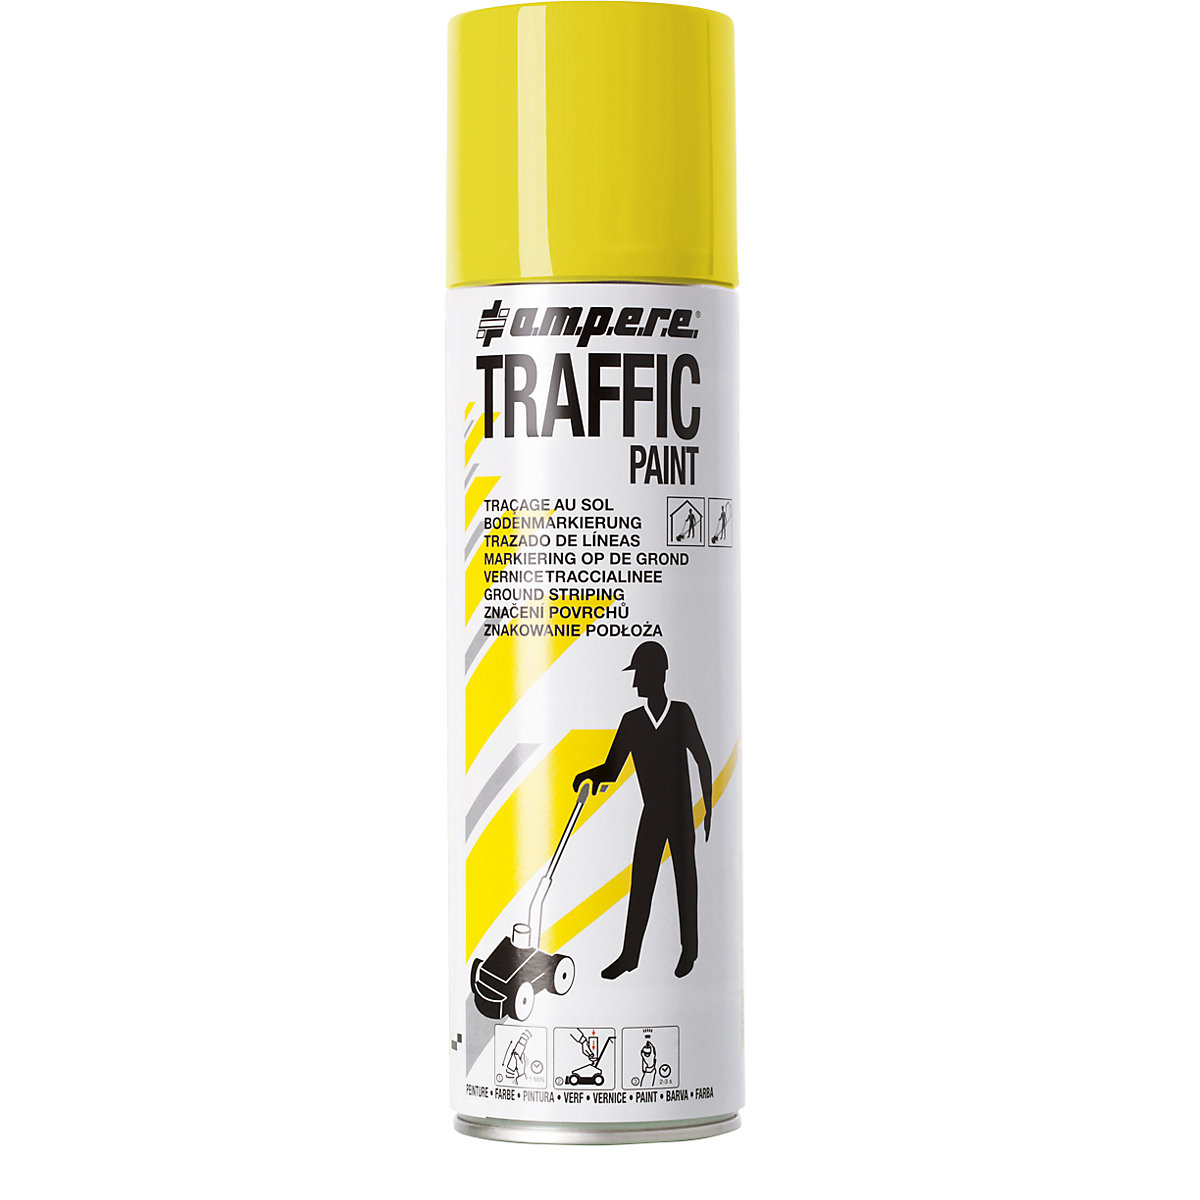 Peinture de marquage Traffic Paint® – Ampere, contenu 500 ml, lot de 12 aérosols, jaune-8